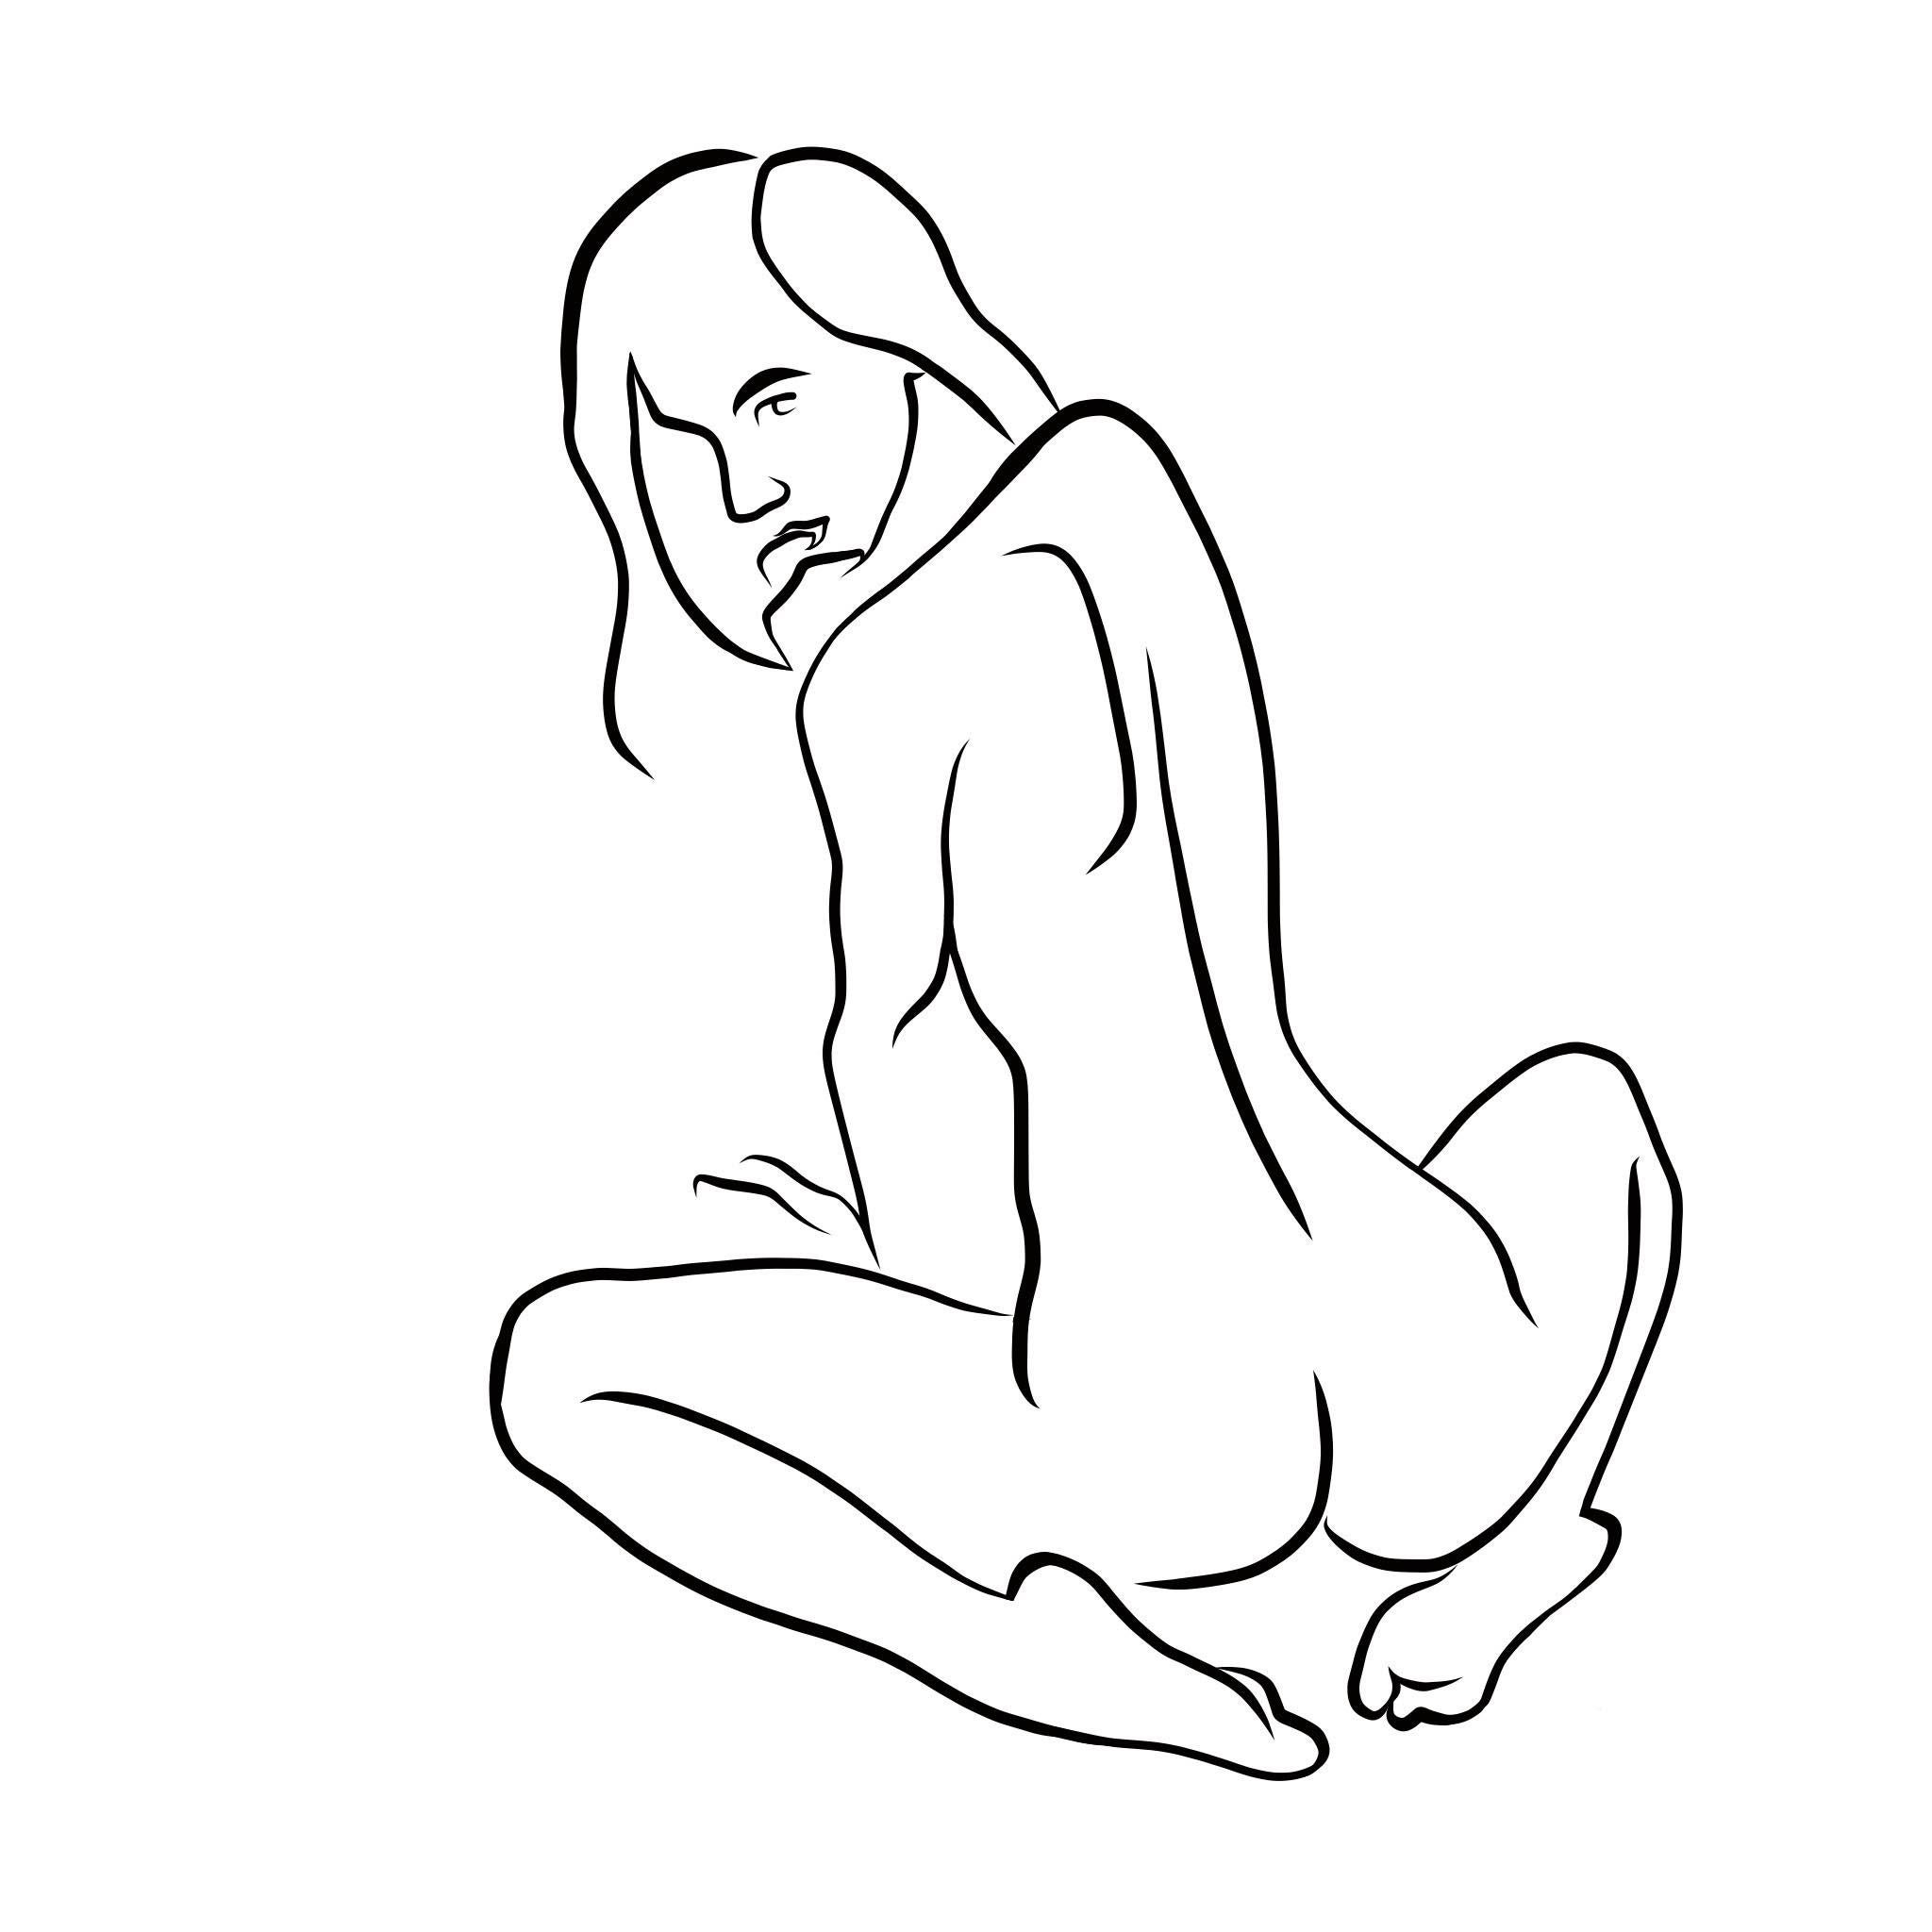 Nude Print Michael Binkley - Haiku #35 - Digital Vector Drawing Seated Female Nude Woman Figure Looking Back